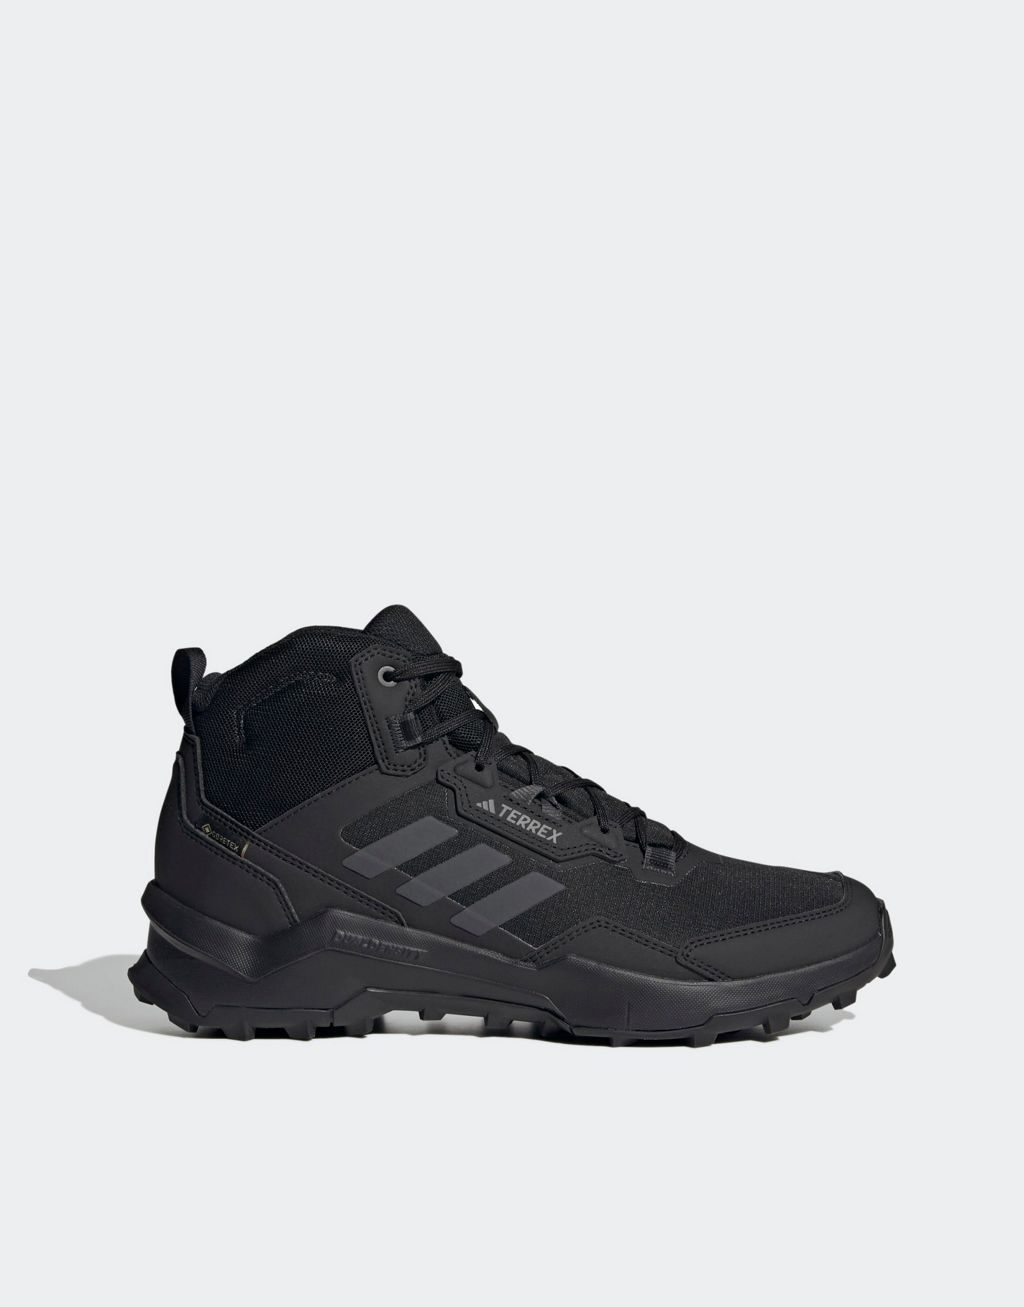 Черные и серые кроссовки adidas Terex для улицы